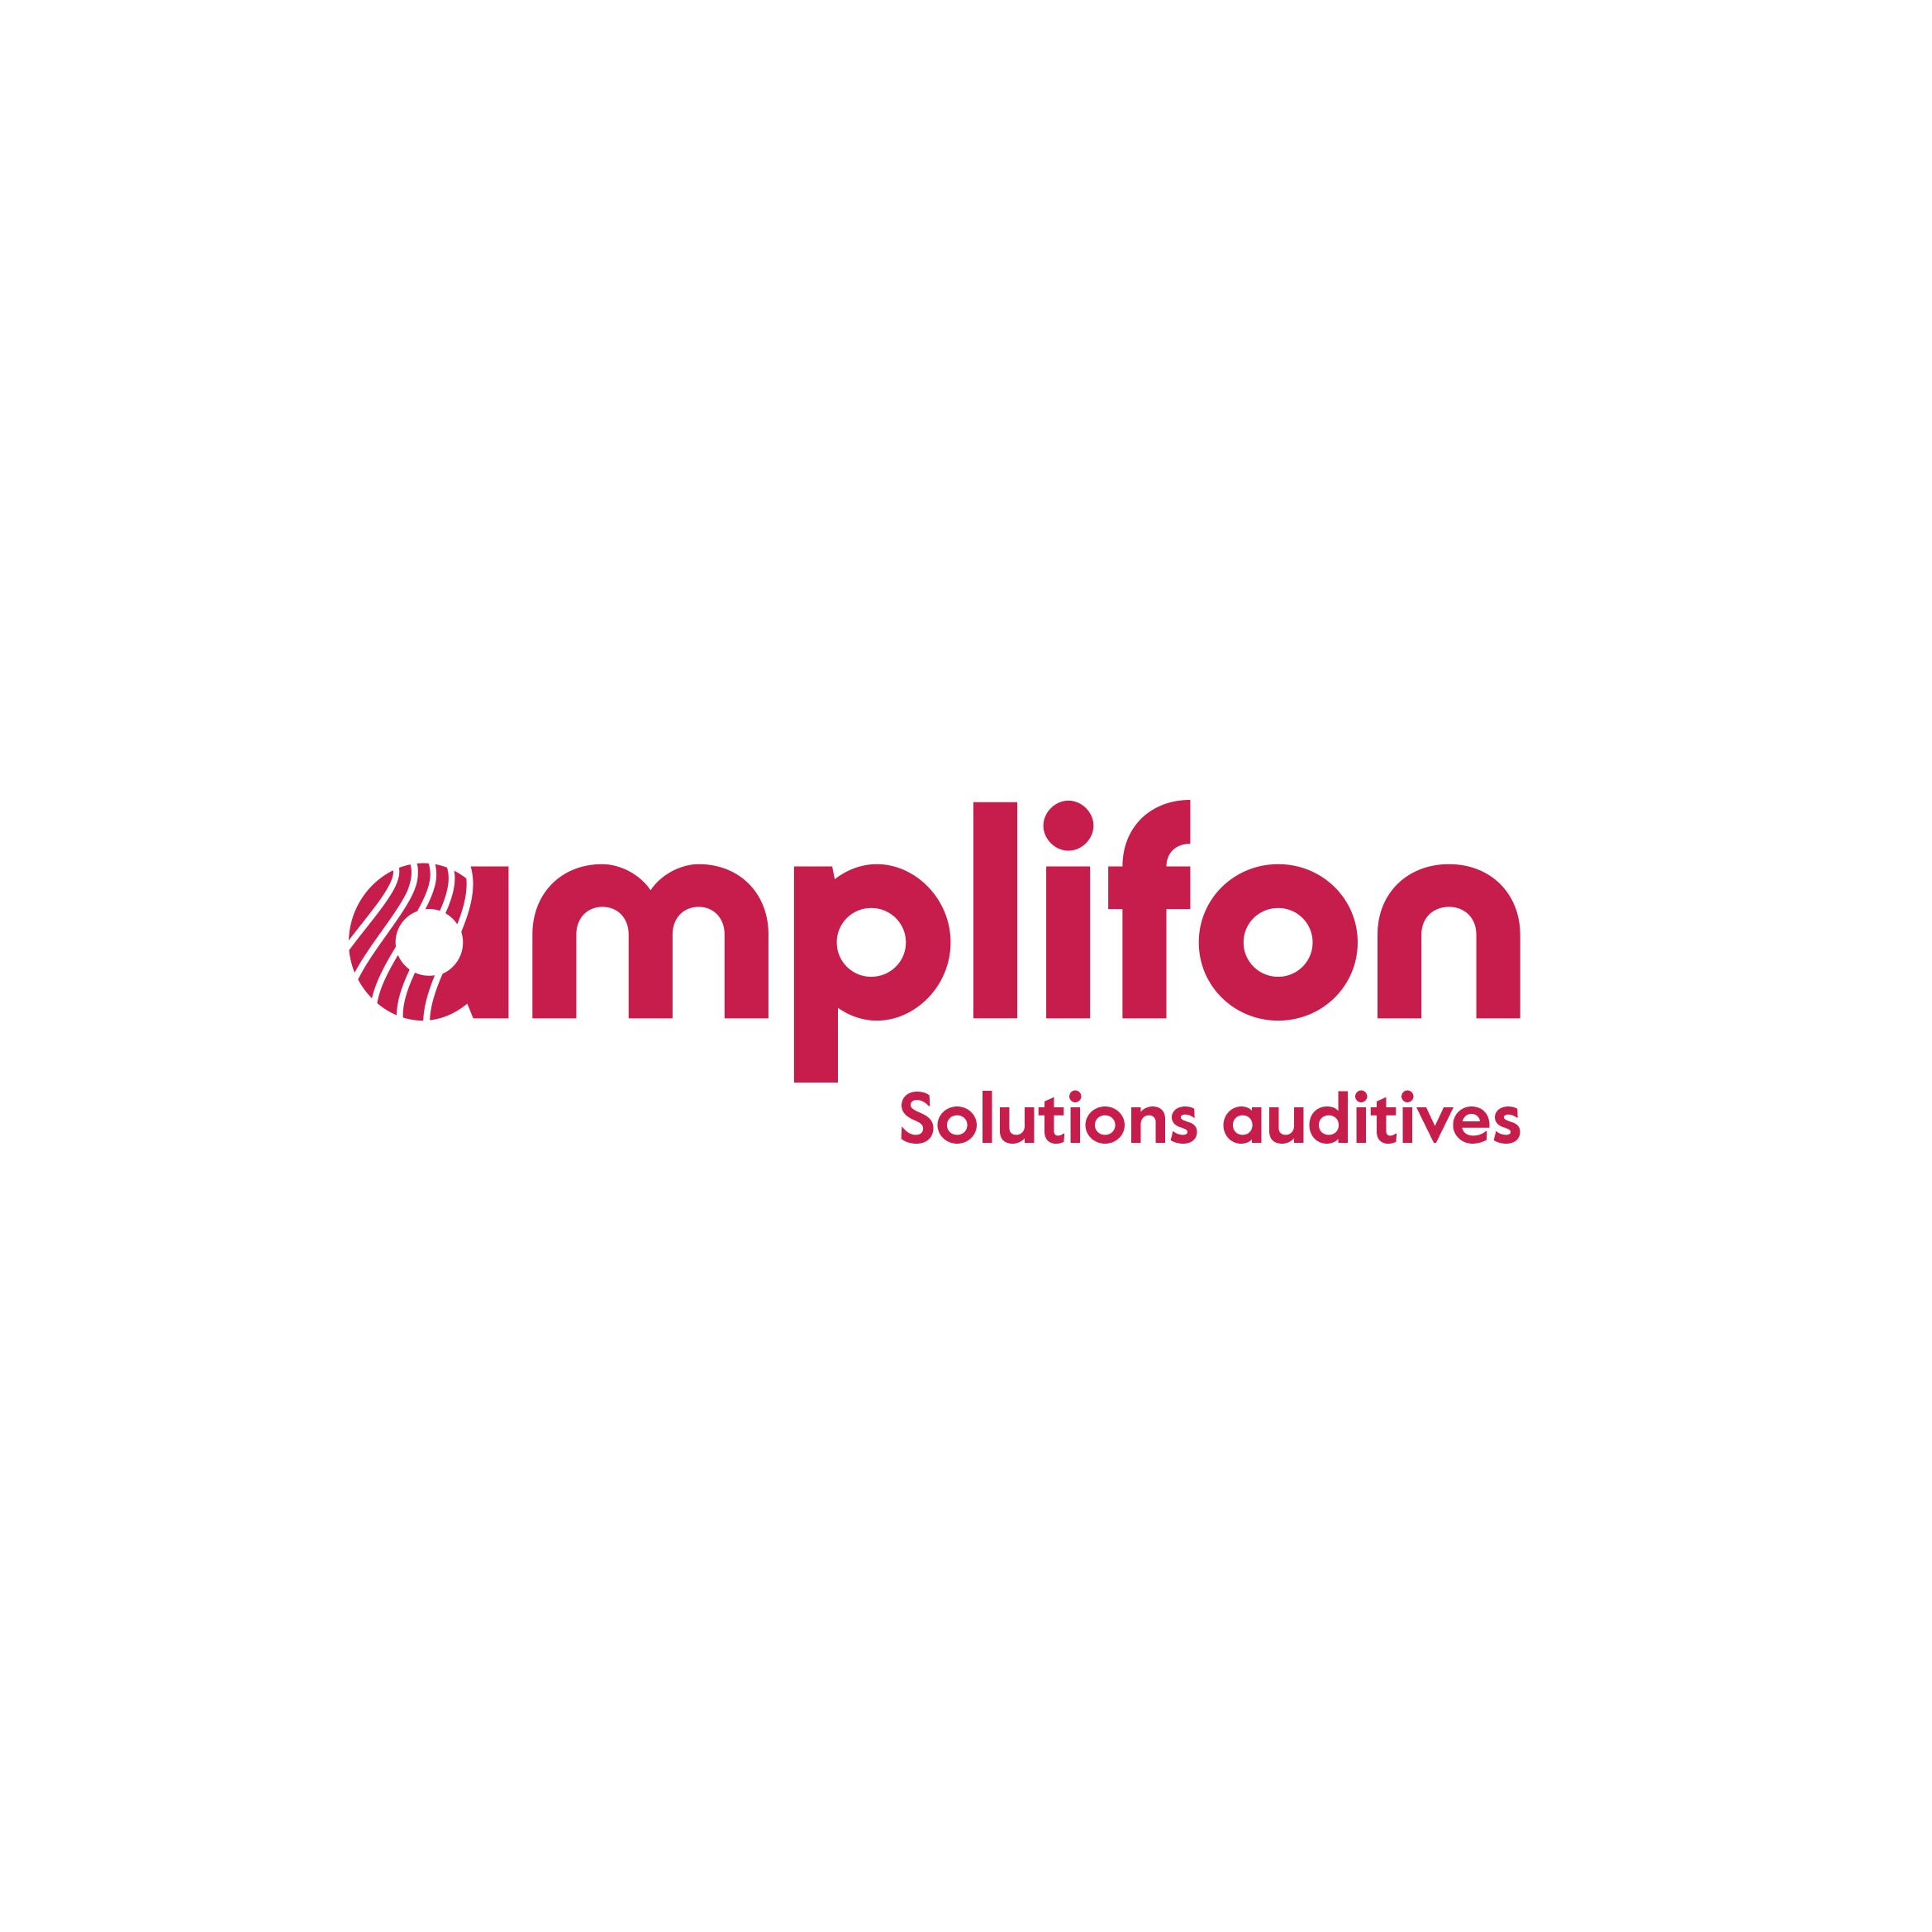 Amplifon Audioprothésiste Rennes Fougères - Hearing Aid Store - Rennes - 02 99 27 76 22 France | ShowMeLocal.com